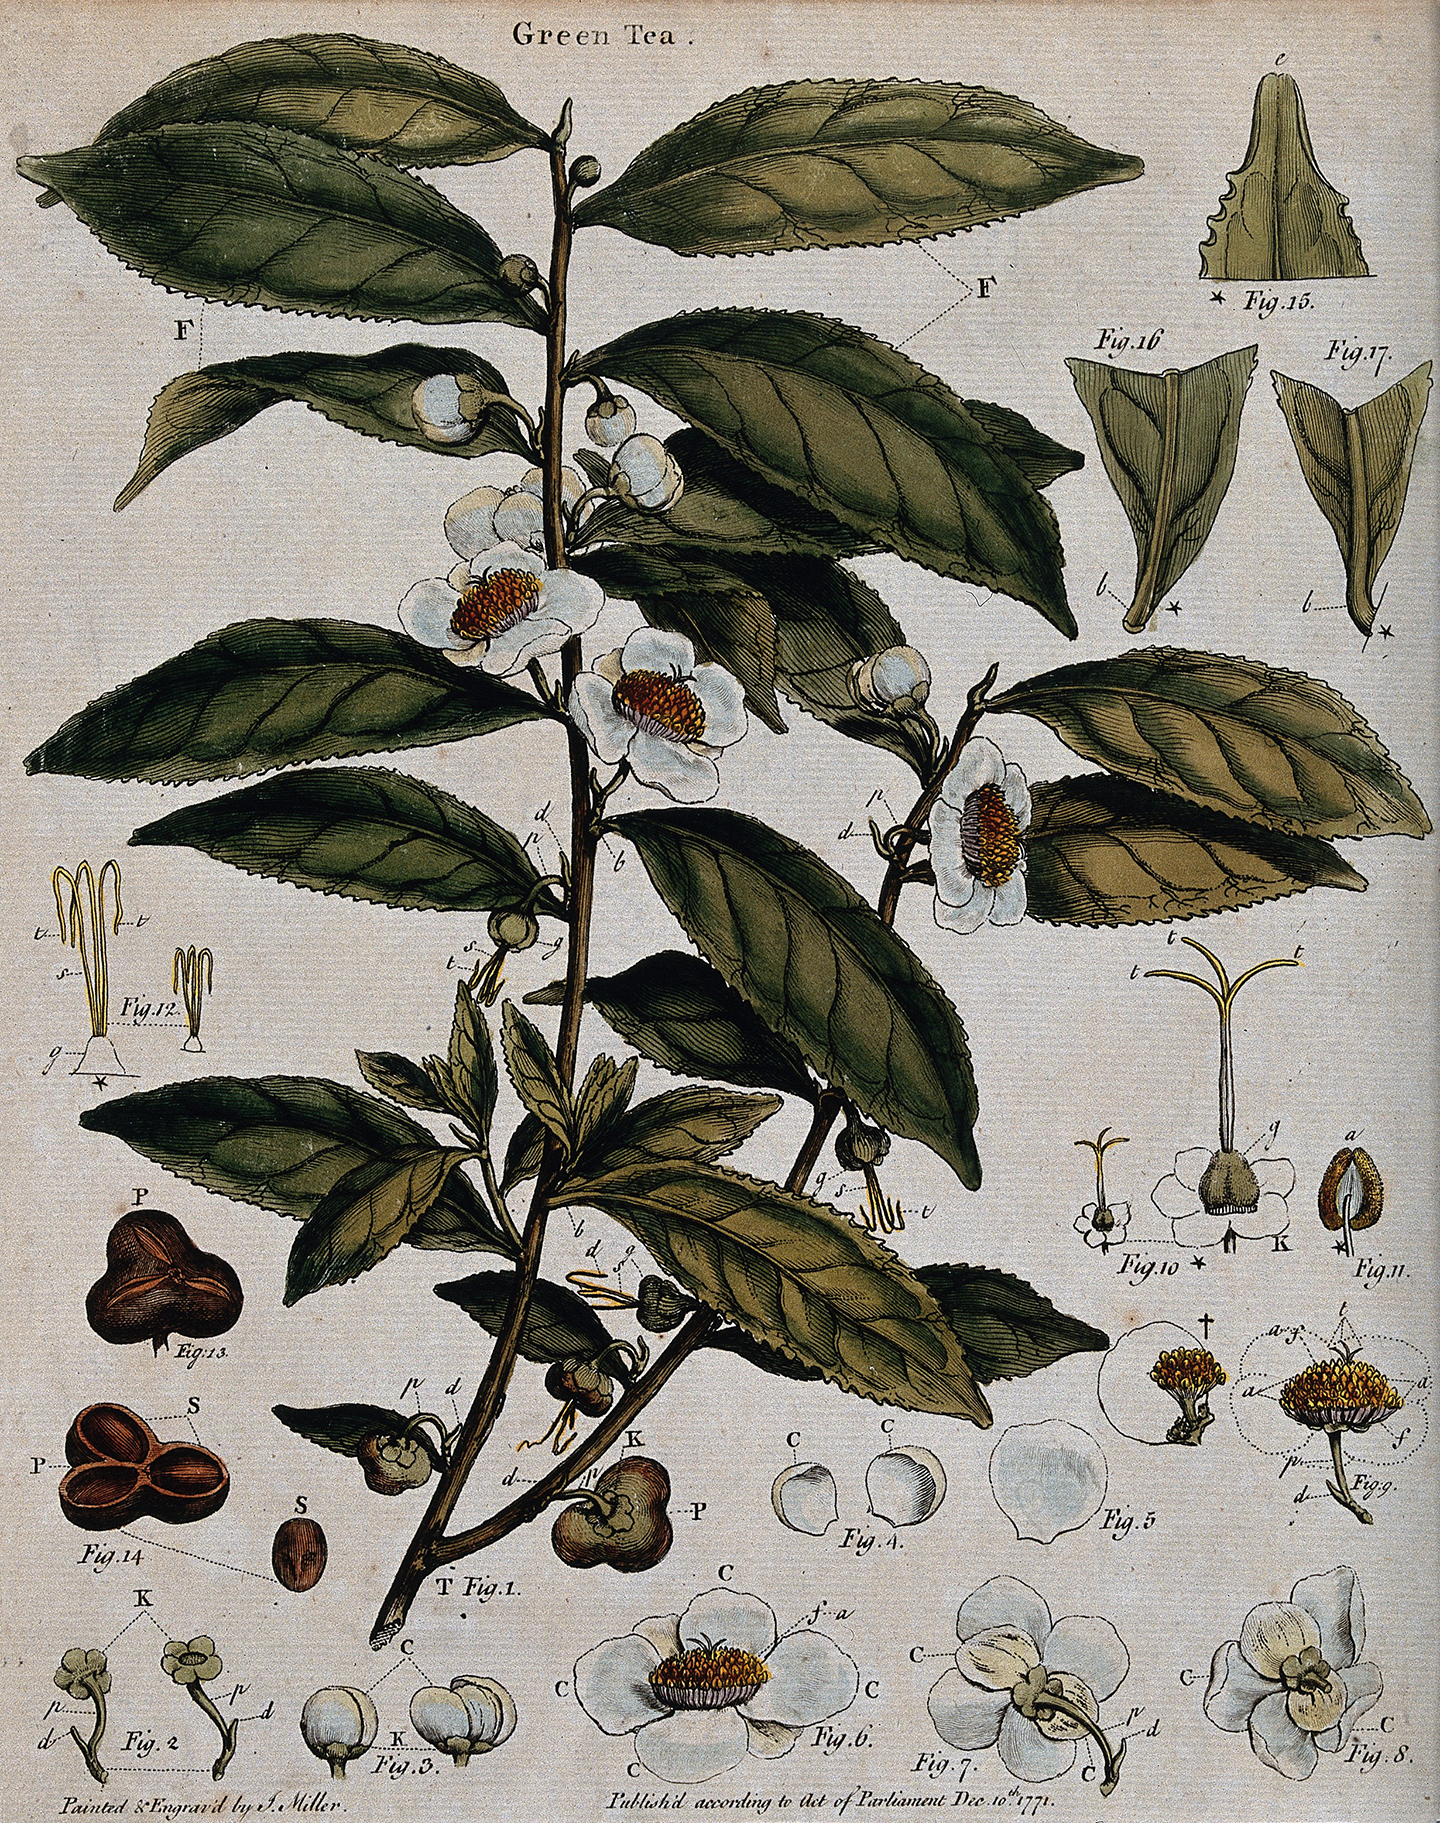 Bức tranh khắc màu về cây trà (Camellia sinensis) có cuống hoa, mặt cắt của lá, và các bộ phận của hoa, J. Miller, khoảng năm 1771. (Ảnh: Wellcome Images/CC BY 4.0 DEED)